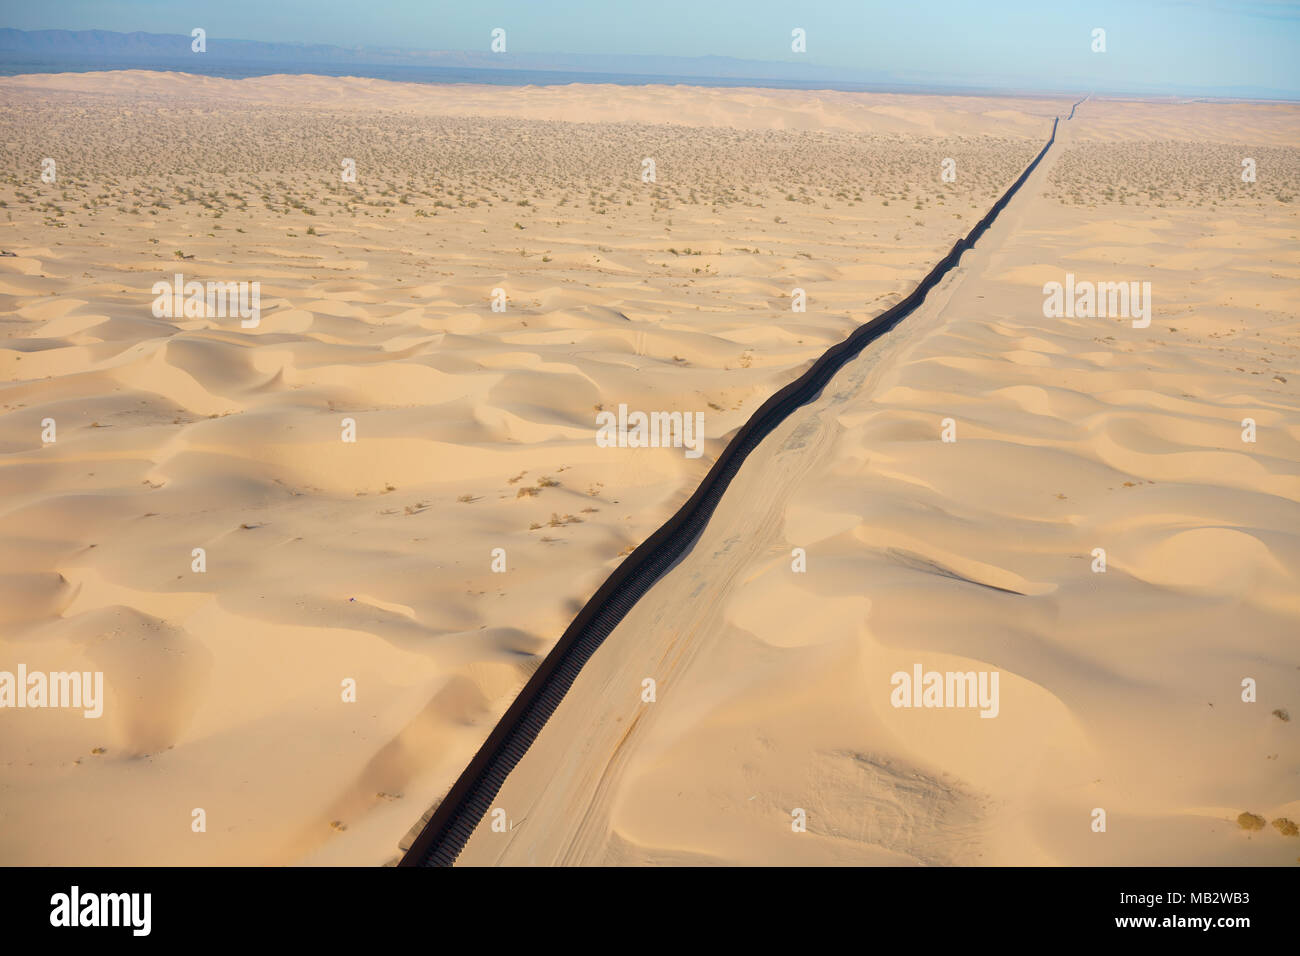 VUE AÉRIENNE. Frontière internationale entre le Mexique (à gauche du mur) et les États-Unis. Dunes d'Algodones, désert de Sonoran, Basse-Californie, Mexique. Banque D'Images